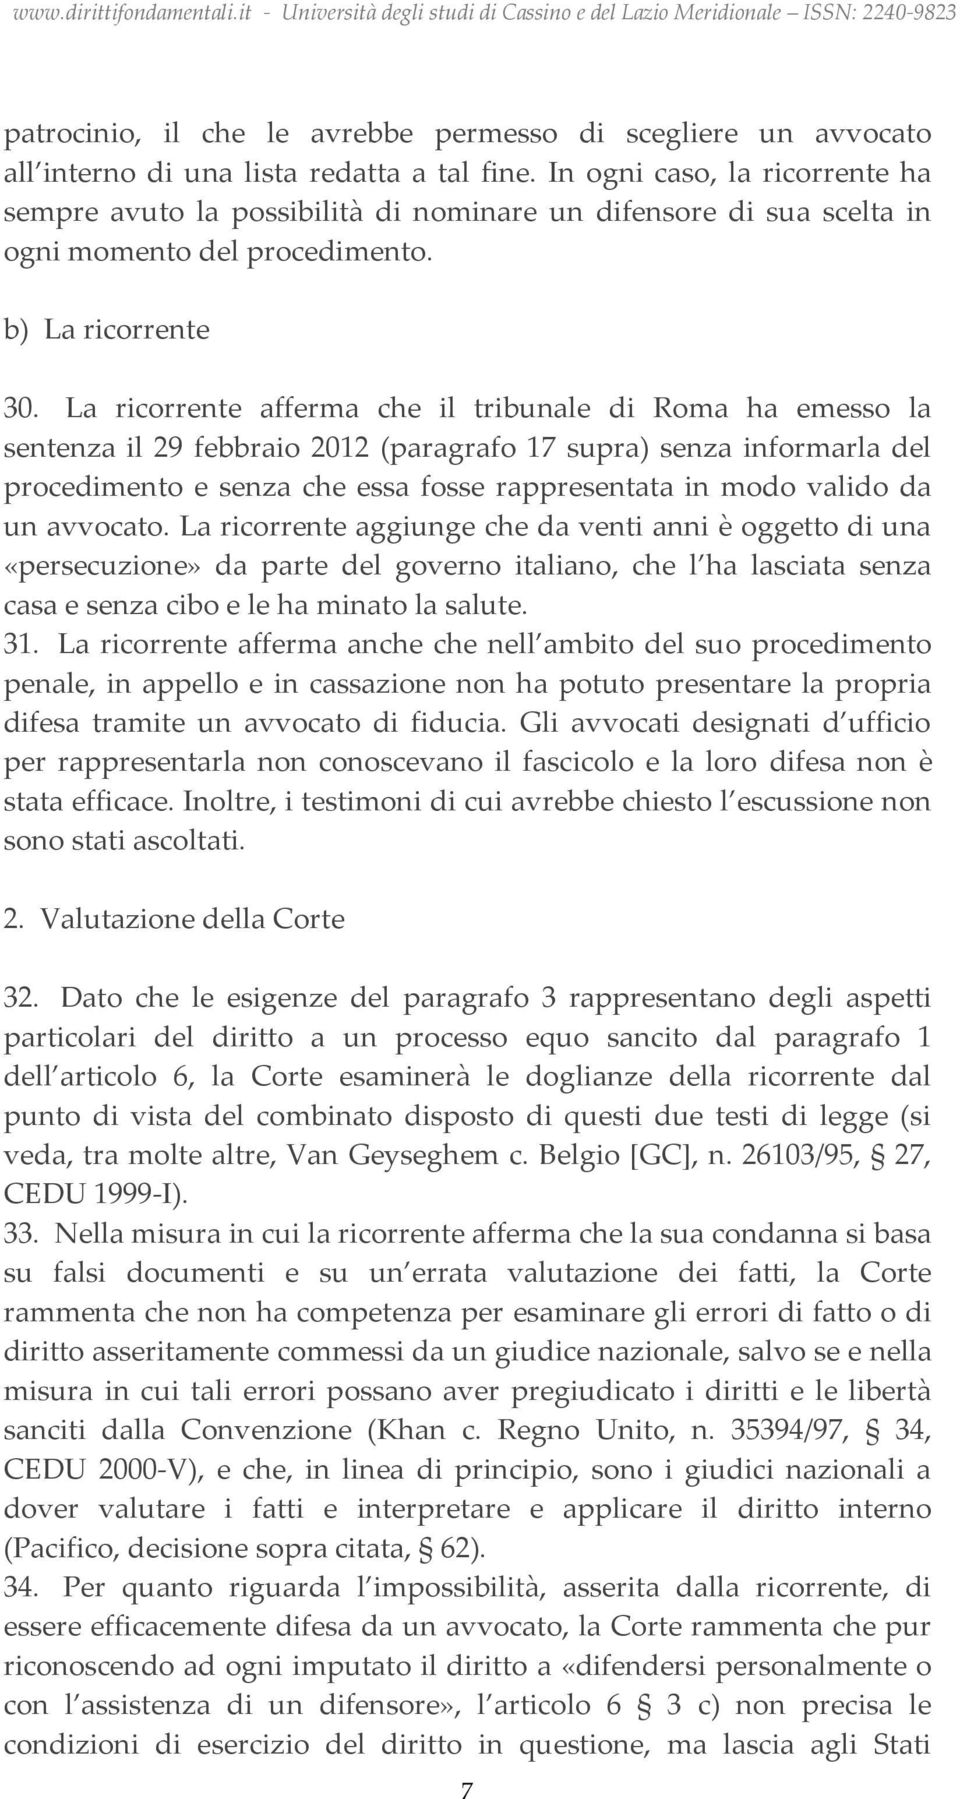 La ricorrente afferma che il tribunale di Roma ha emesso la sentenza il 29 febbraio 2012 (paragrafo 17 supra) senza informarla del procedimento e senza che essa fosse rappresentata in modo valido da